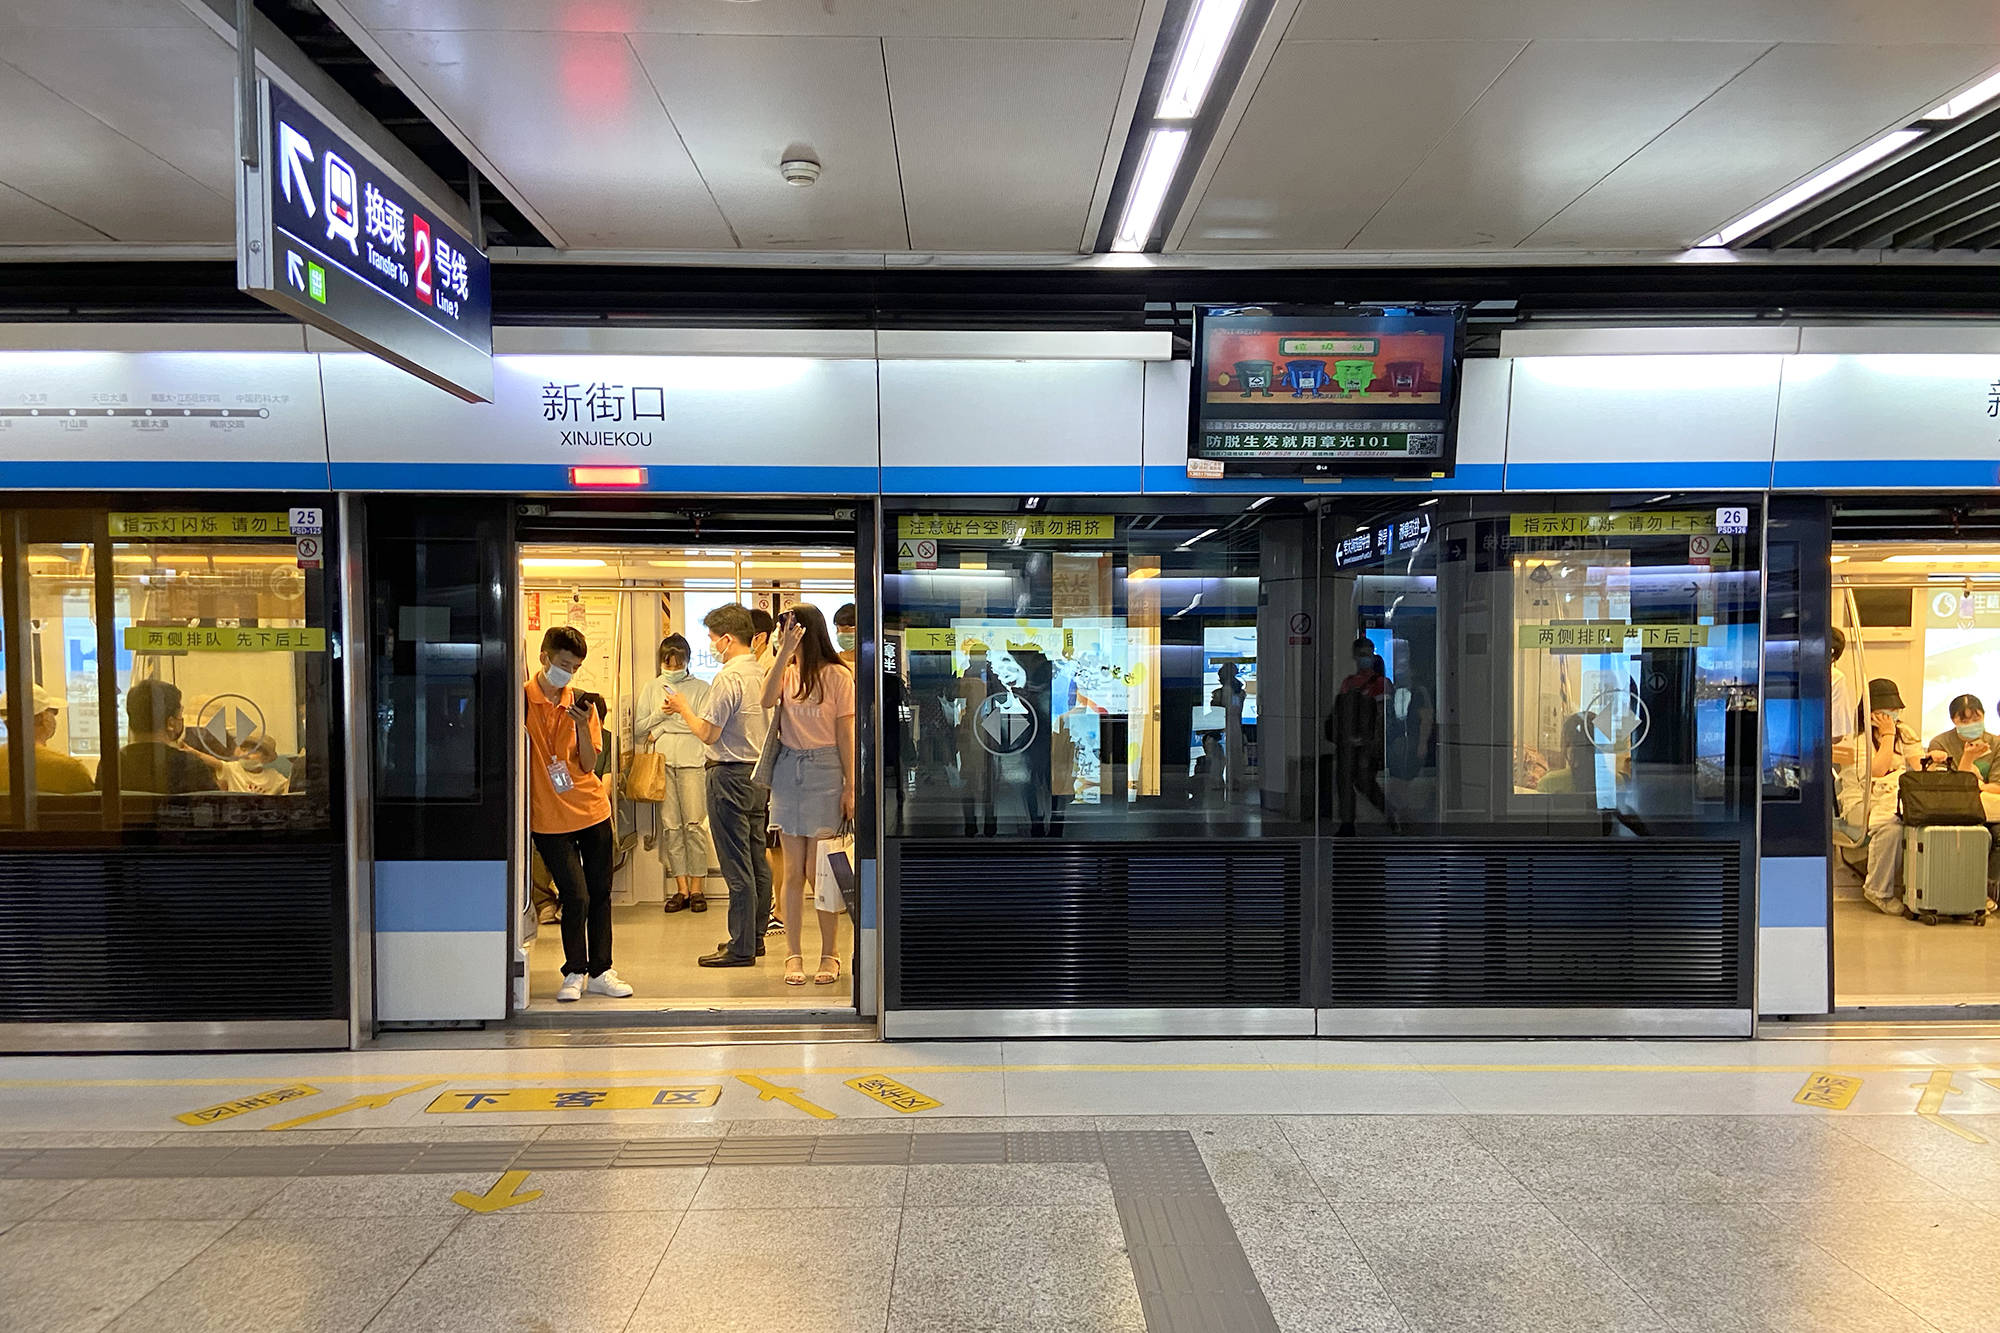 乘坐南京地铁 S9 号线是一种怎样的体验？ - 知乎